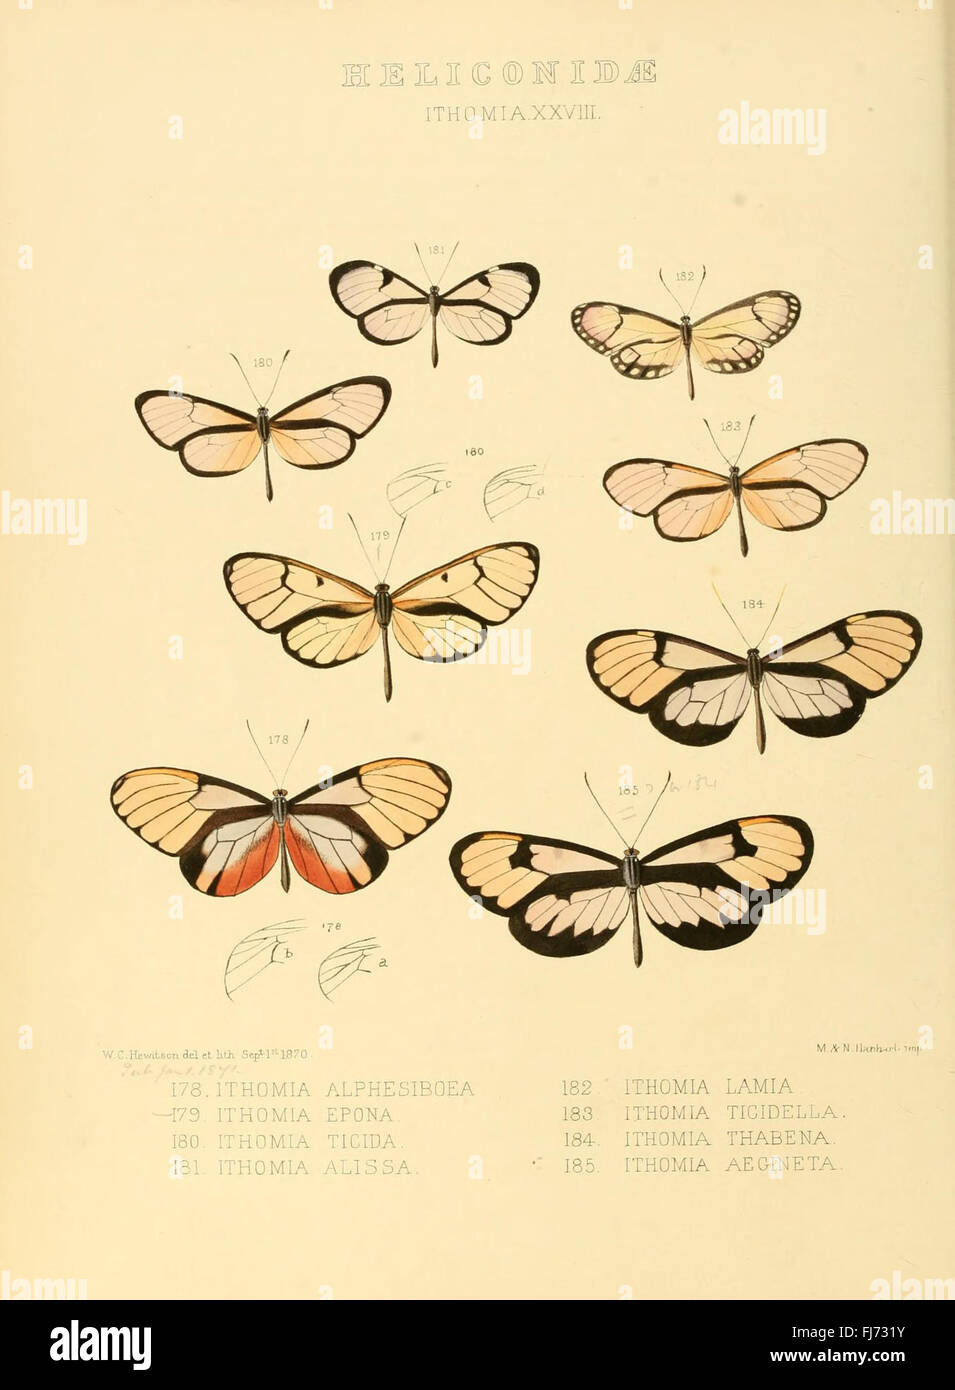 Illustrazioni di nuove specie di farfalle esotiche (Heliconidae- Ithomia XXVIII) Foto Stock